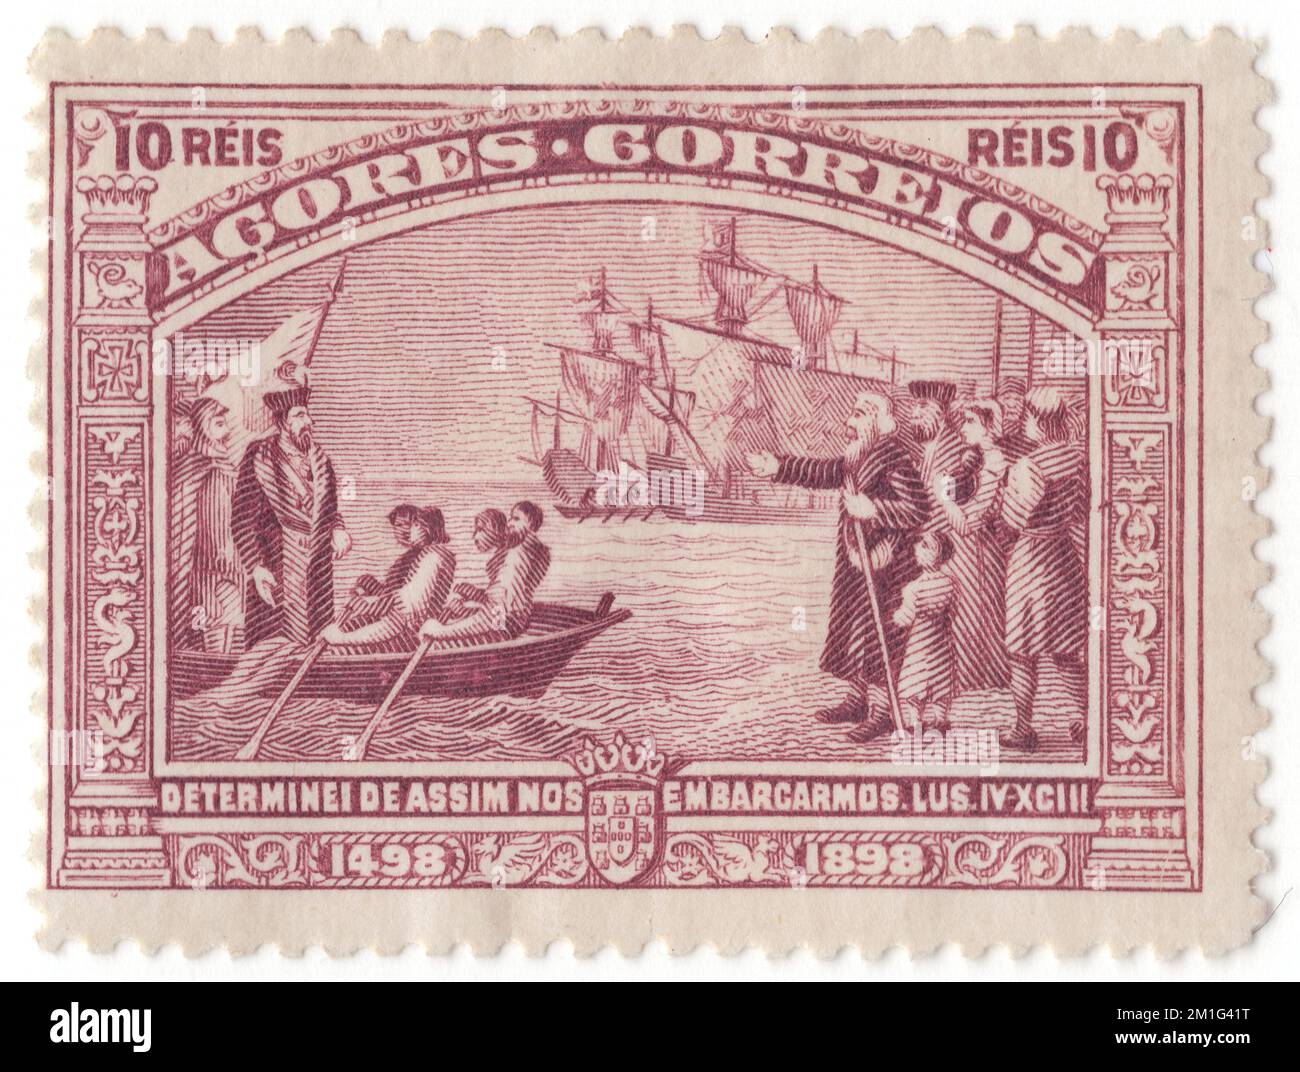 AÇORES - 1898 1 avril : timbre-poste gris-lilas reis de 10 représentant l'embarquement à Rastello. Numéro de Vasco da Gama, quatrième centenaire de la découverte par Vasco da Gama de la route vers l’Inde. Le voyage de Vasco da Gama en Inde en 1497-1498 a fait l'objet d'une question de 1898. Les dessins de Vasco da Gama ont également été utilisés dans les colonies africaines et ont été inscrits en Afrique au lieu du Portugal. C'était la seule question générale pour les colonies. Vasco da Gama, 1st comte de Vidigueira, était un explorateur portugais et le premier européen à atteindre l'Inde par mer. Il a effectué son premier voyage en Inde en passant par le cap de bonne espérance Banque D'Images